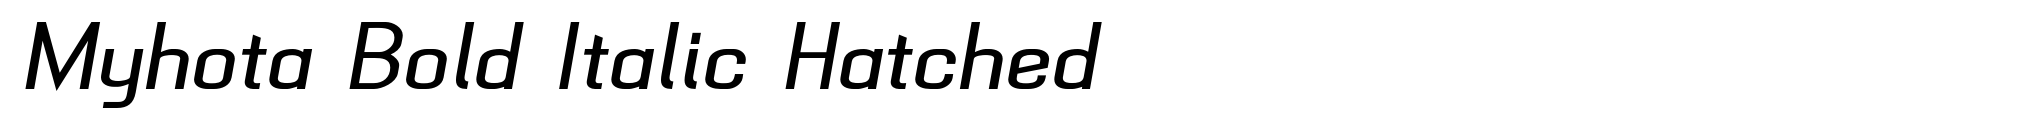 Myhota Bold Italic Hatched image